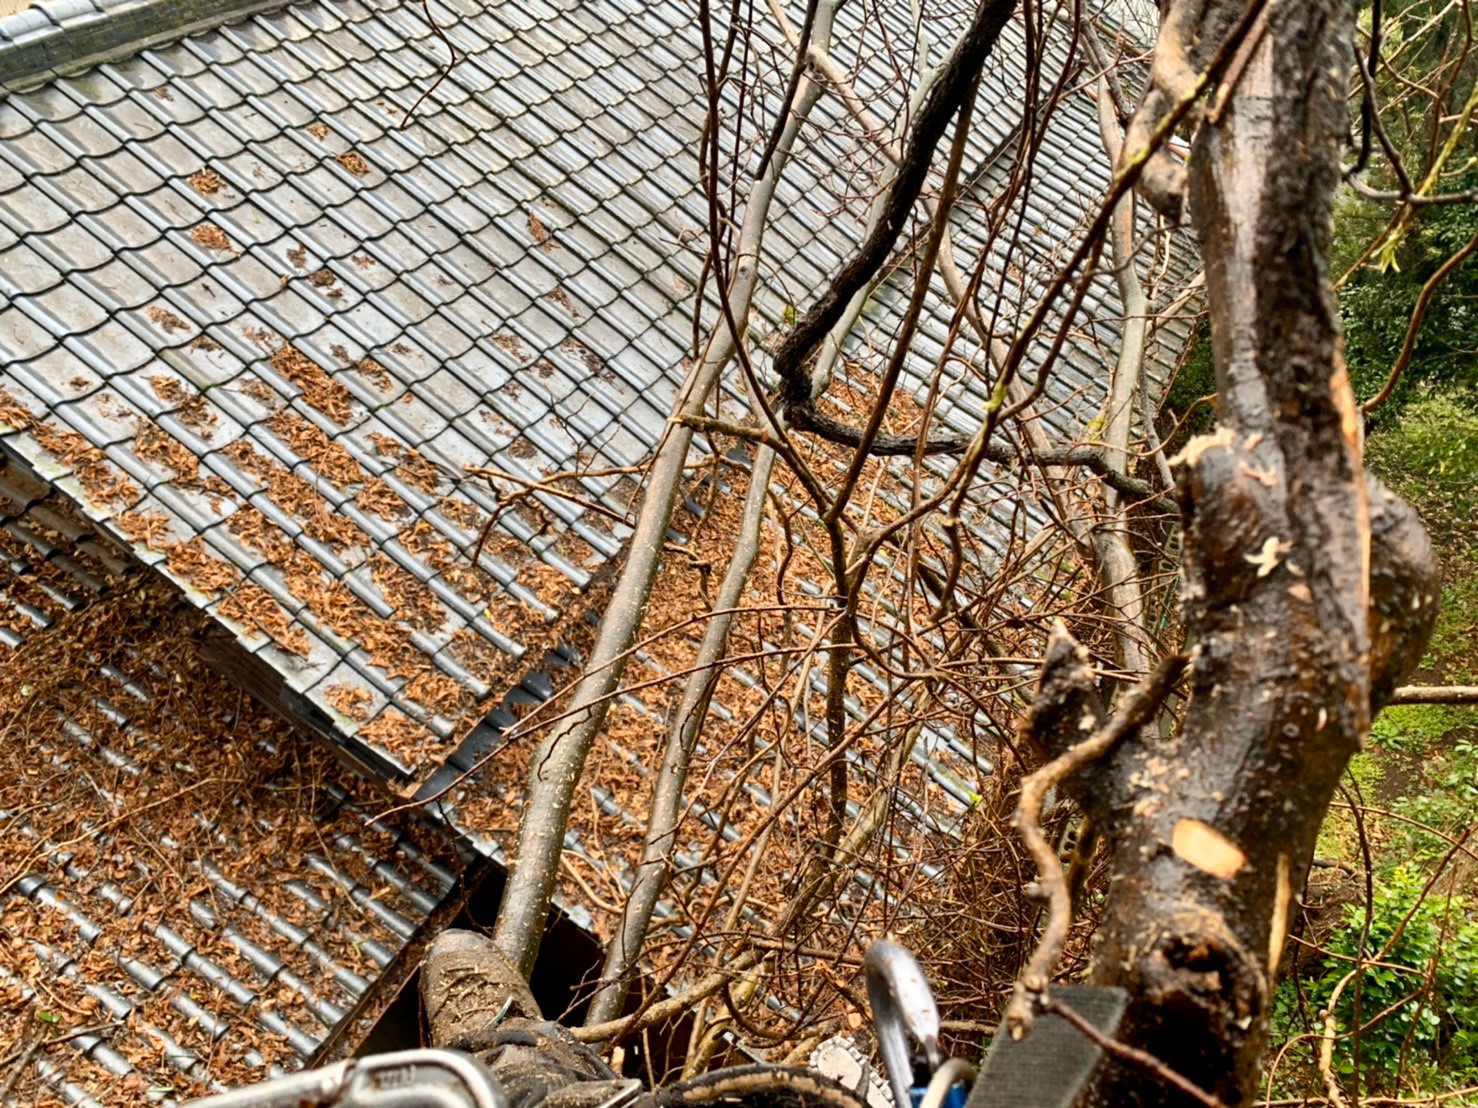 樹上からの作業風景。屋根に被さるように枝を伸ばしている事がよくお分かりいただけるかと思います